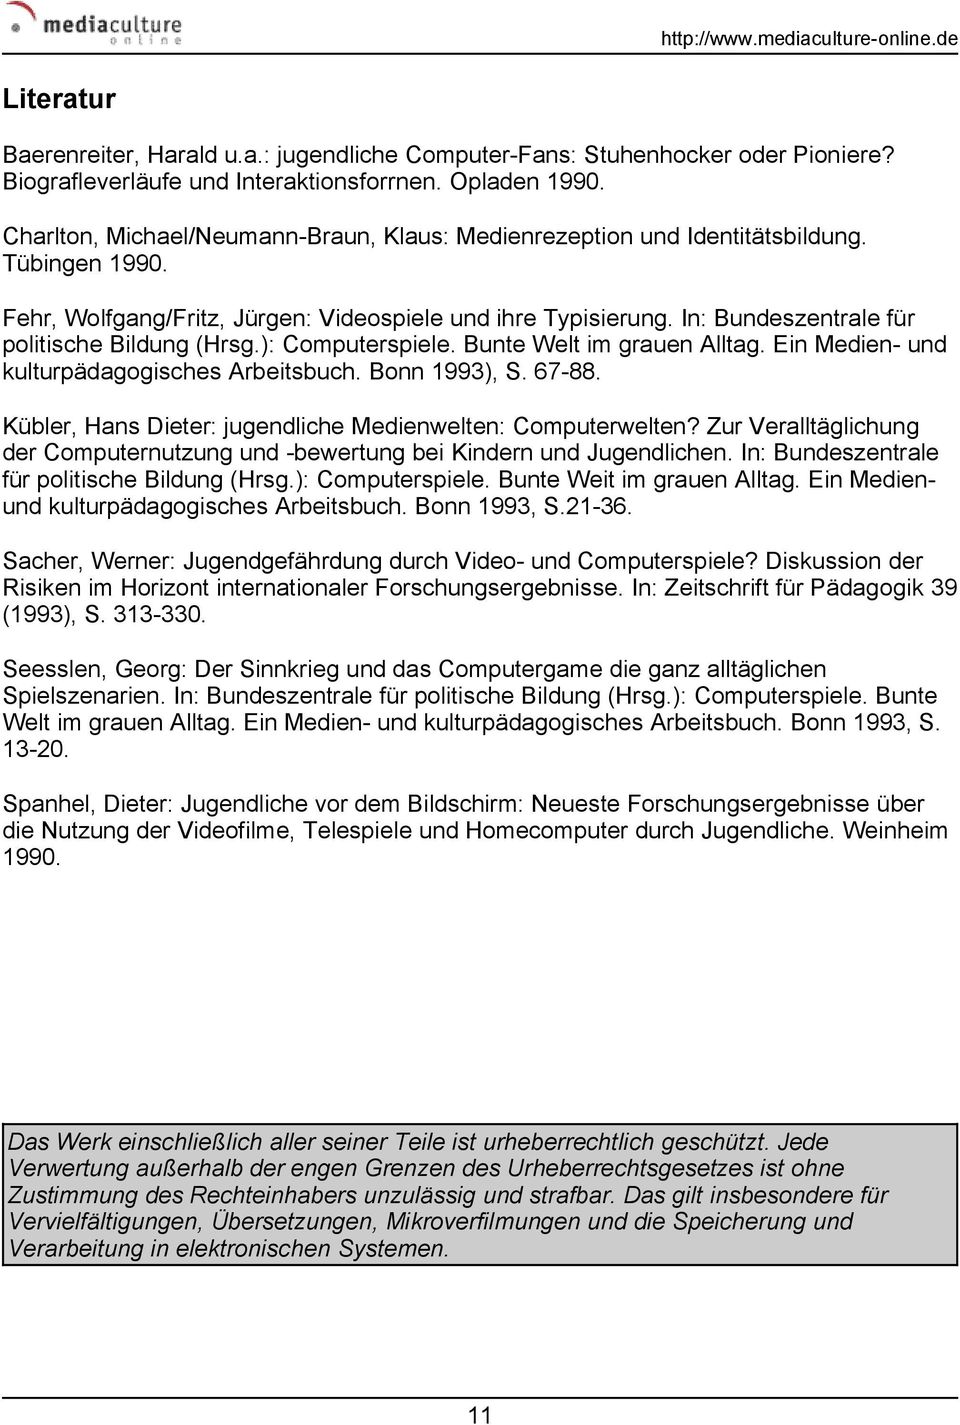 In: Bundeszentrale für politische Bildung (Hrsg.): Computerspiele. Bunte Welt im grauen Alltag. Ein Medien- und kulturpädagogisches Arbeitsbuch. Bonn 1993), S. 67-88.